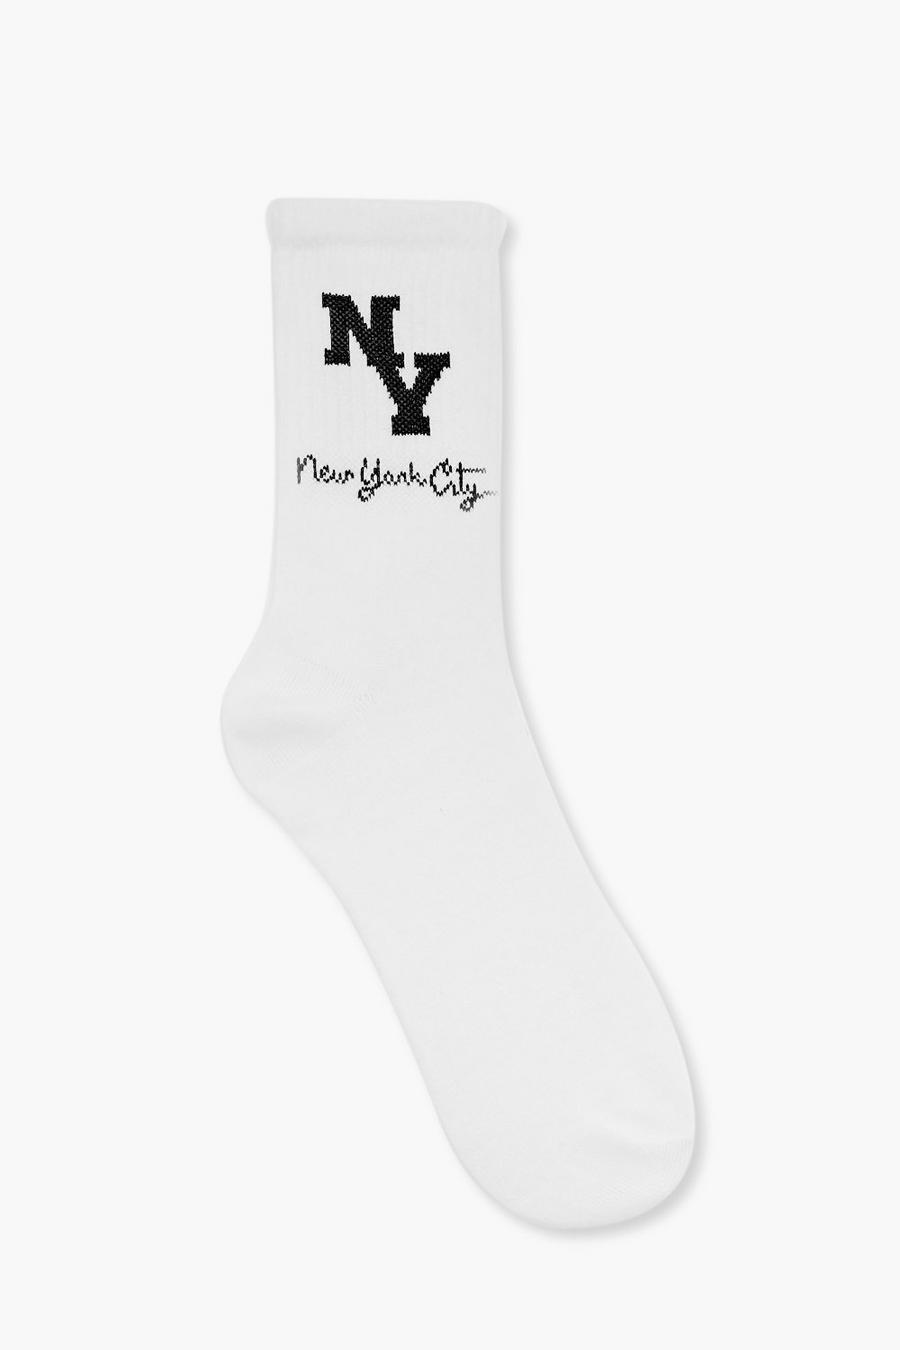 Single Ny City Slogan Socks , White bianco